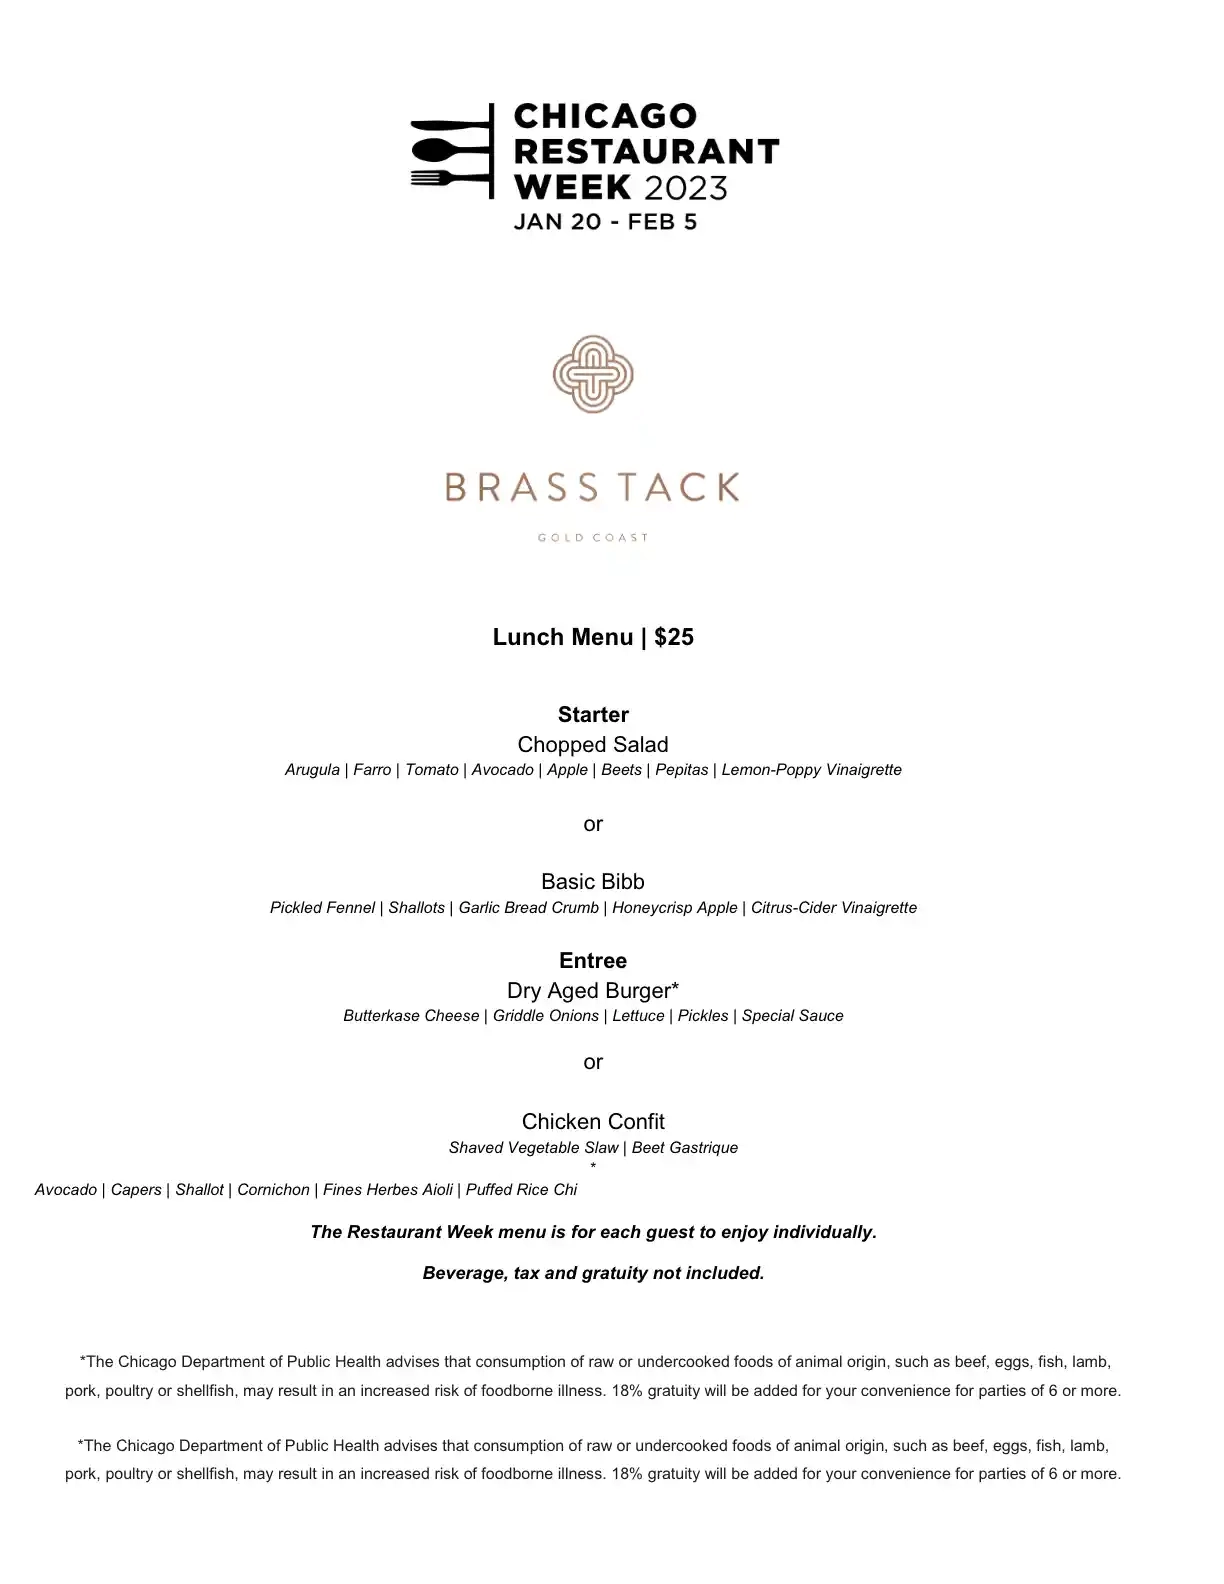 Chicago Restaurant Week 2023 Menu Brass Tack Lunch